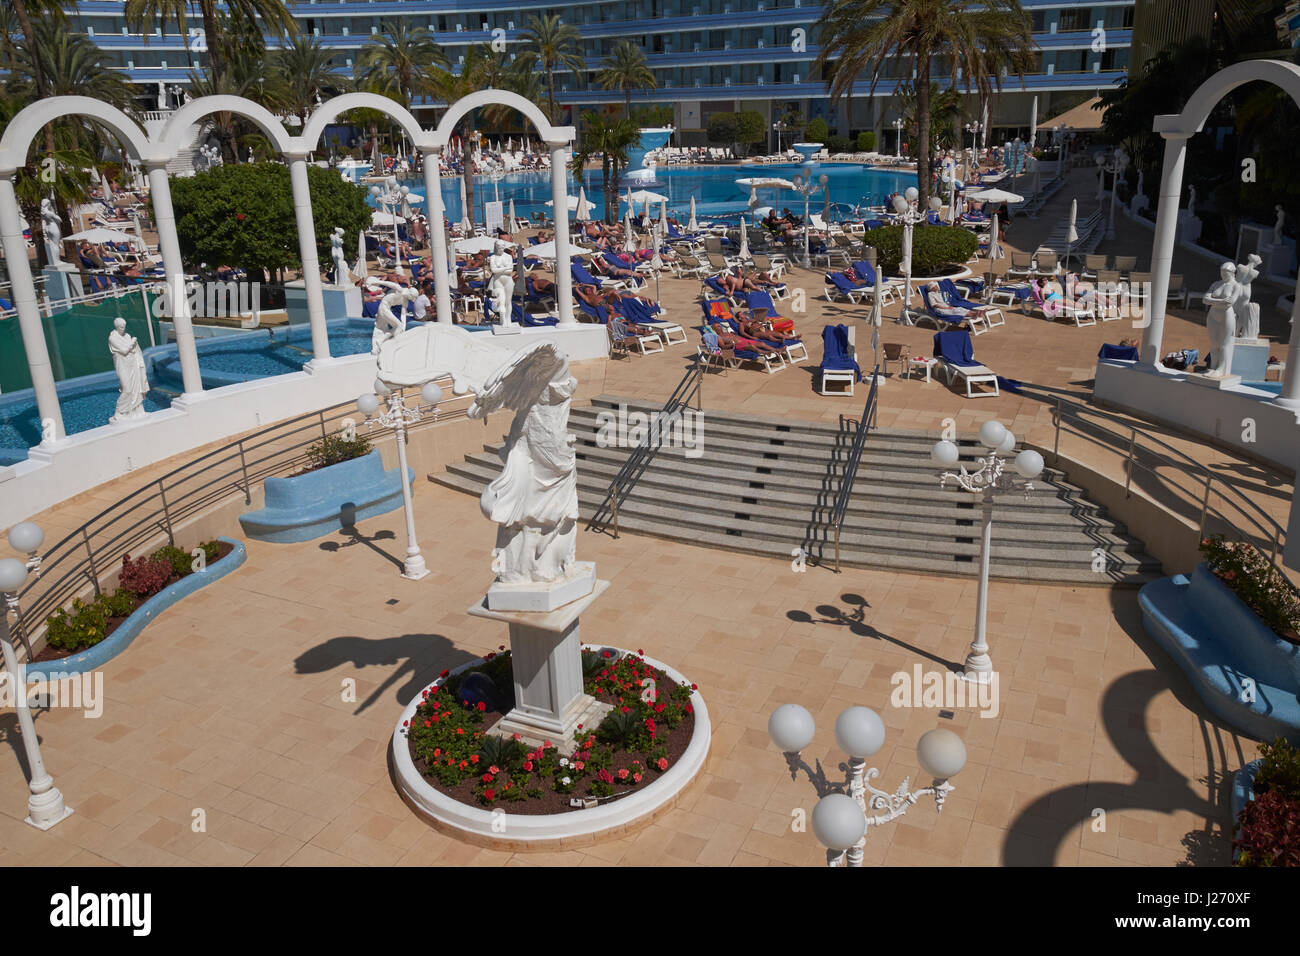 El complejo Mare Nostrum Resort Hotel en Playa de las Américas, Arona, Tenerife, Islas Canarias, España. Foto de stock